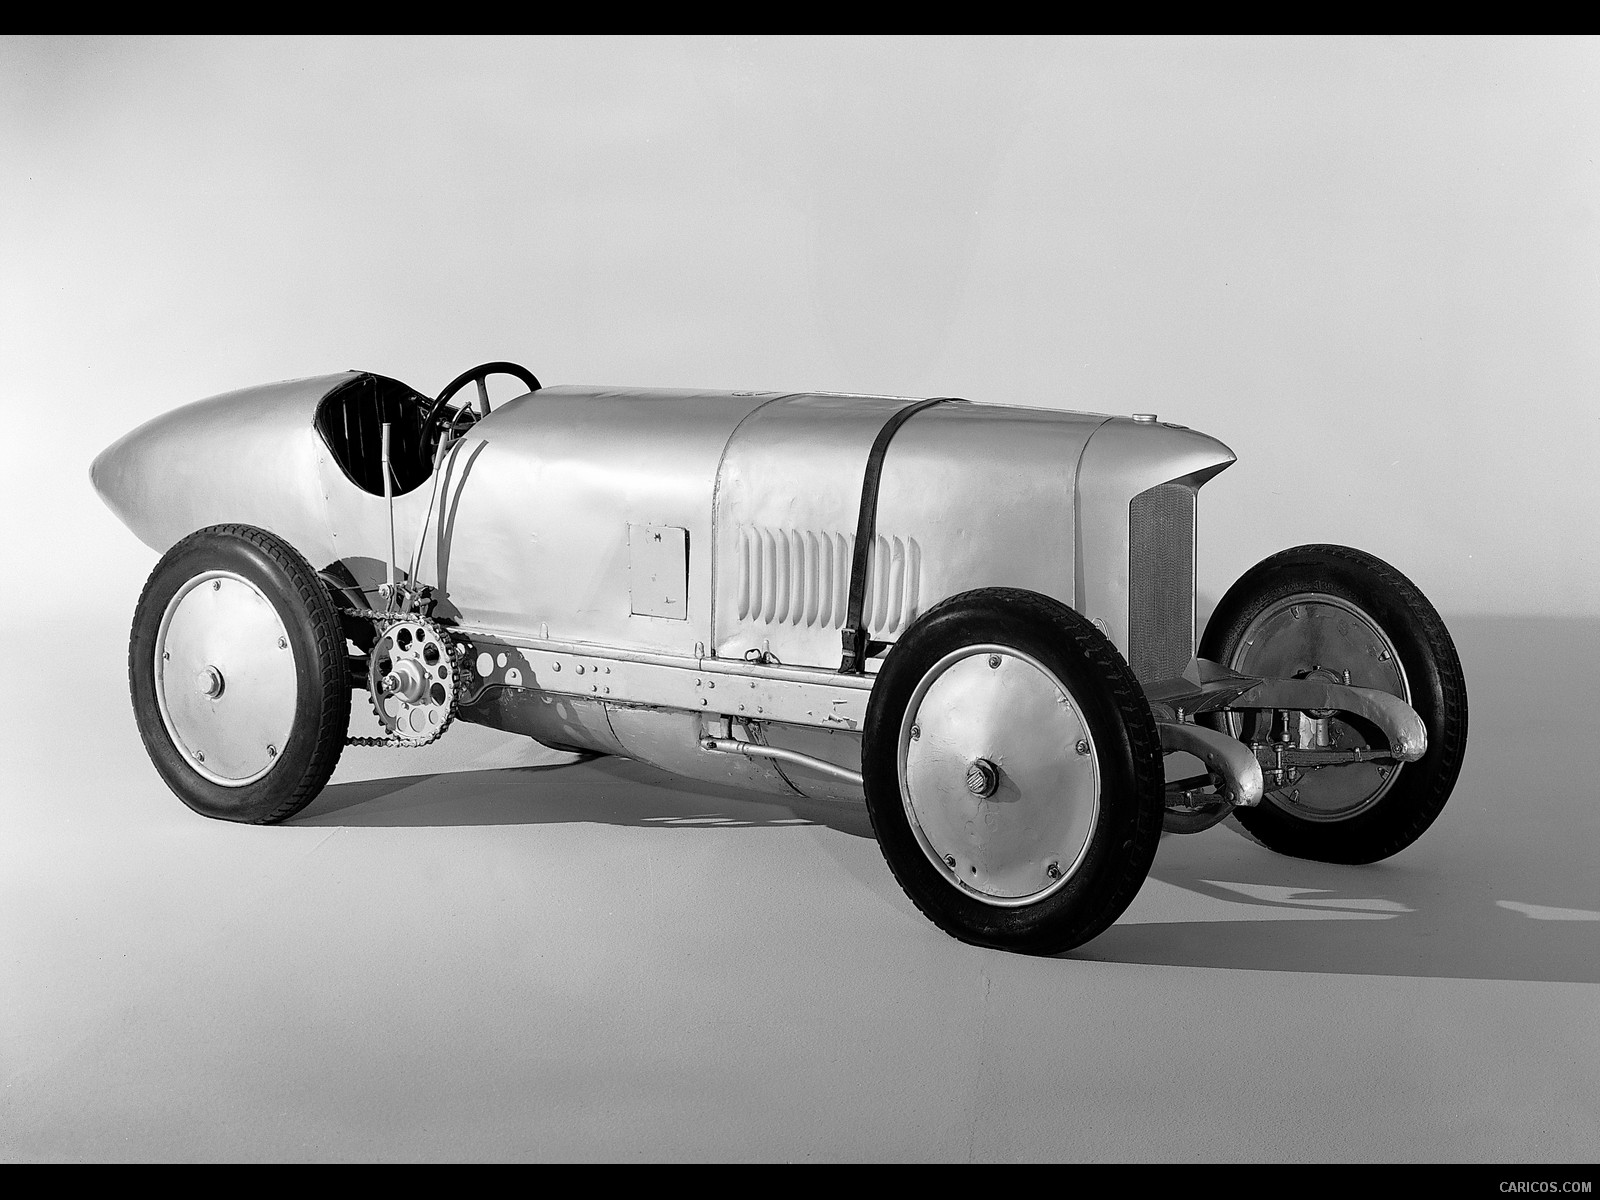 Blitzen-Benz 200-PS (1909) - record car - , #2 of 14